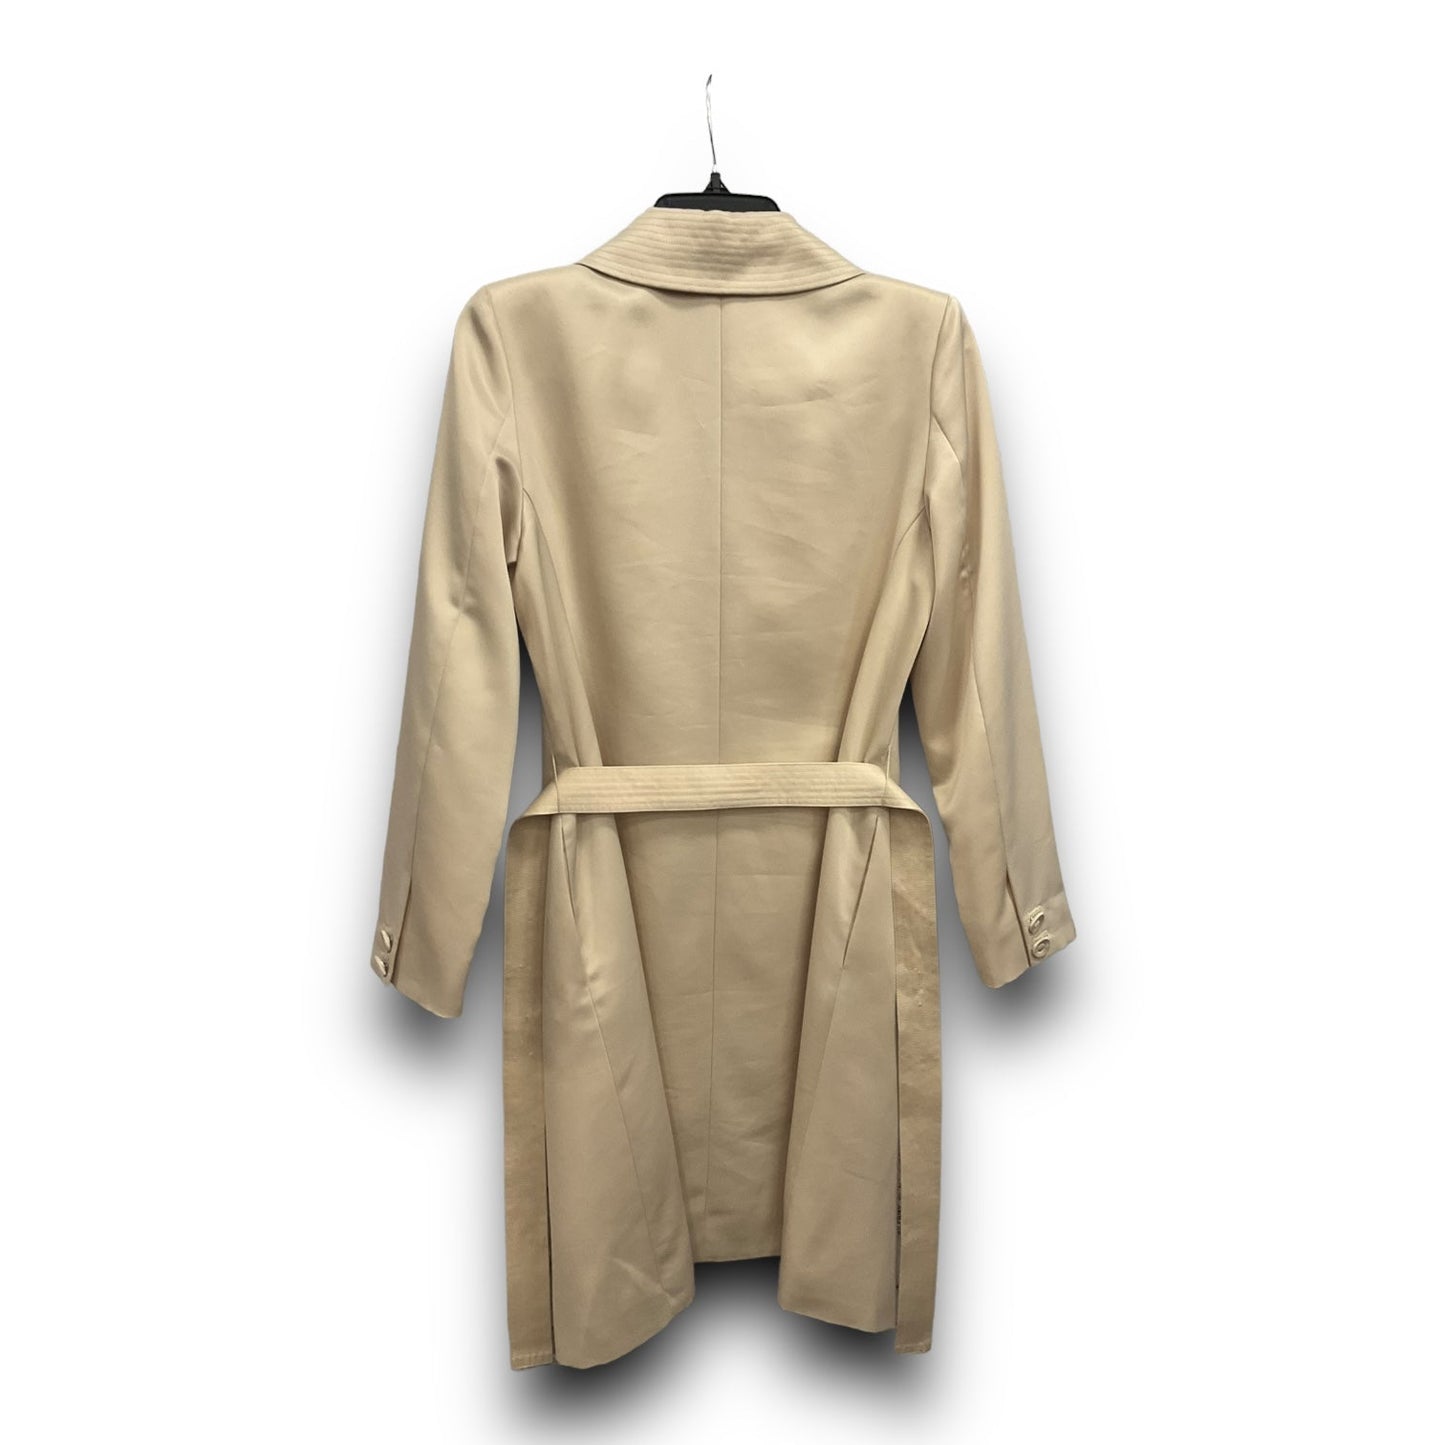 Coat Peacoat By White House Black Market  Size: Xs